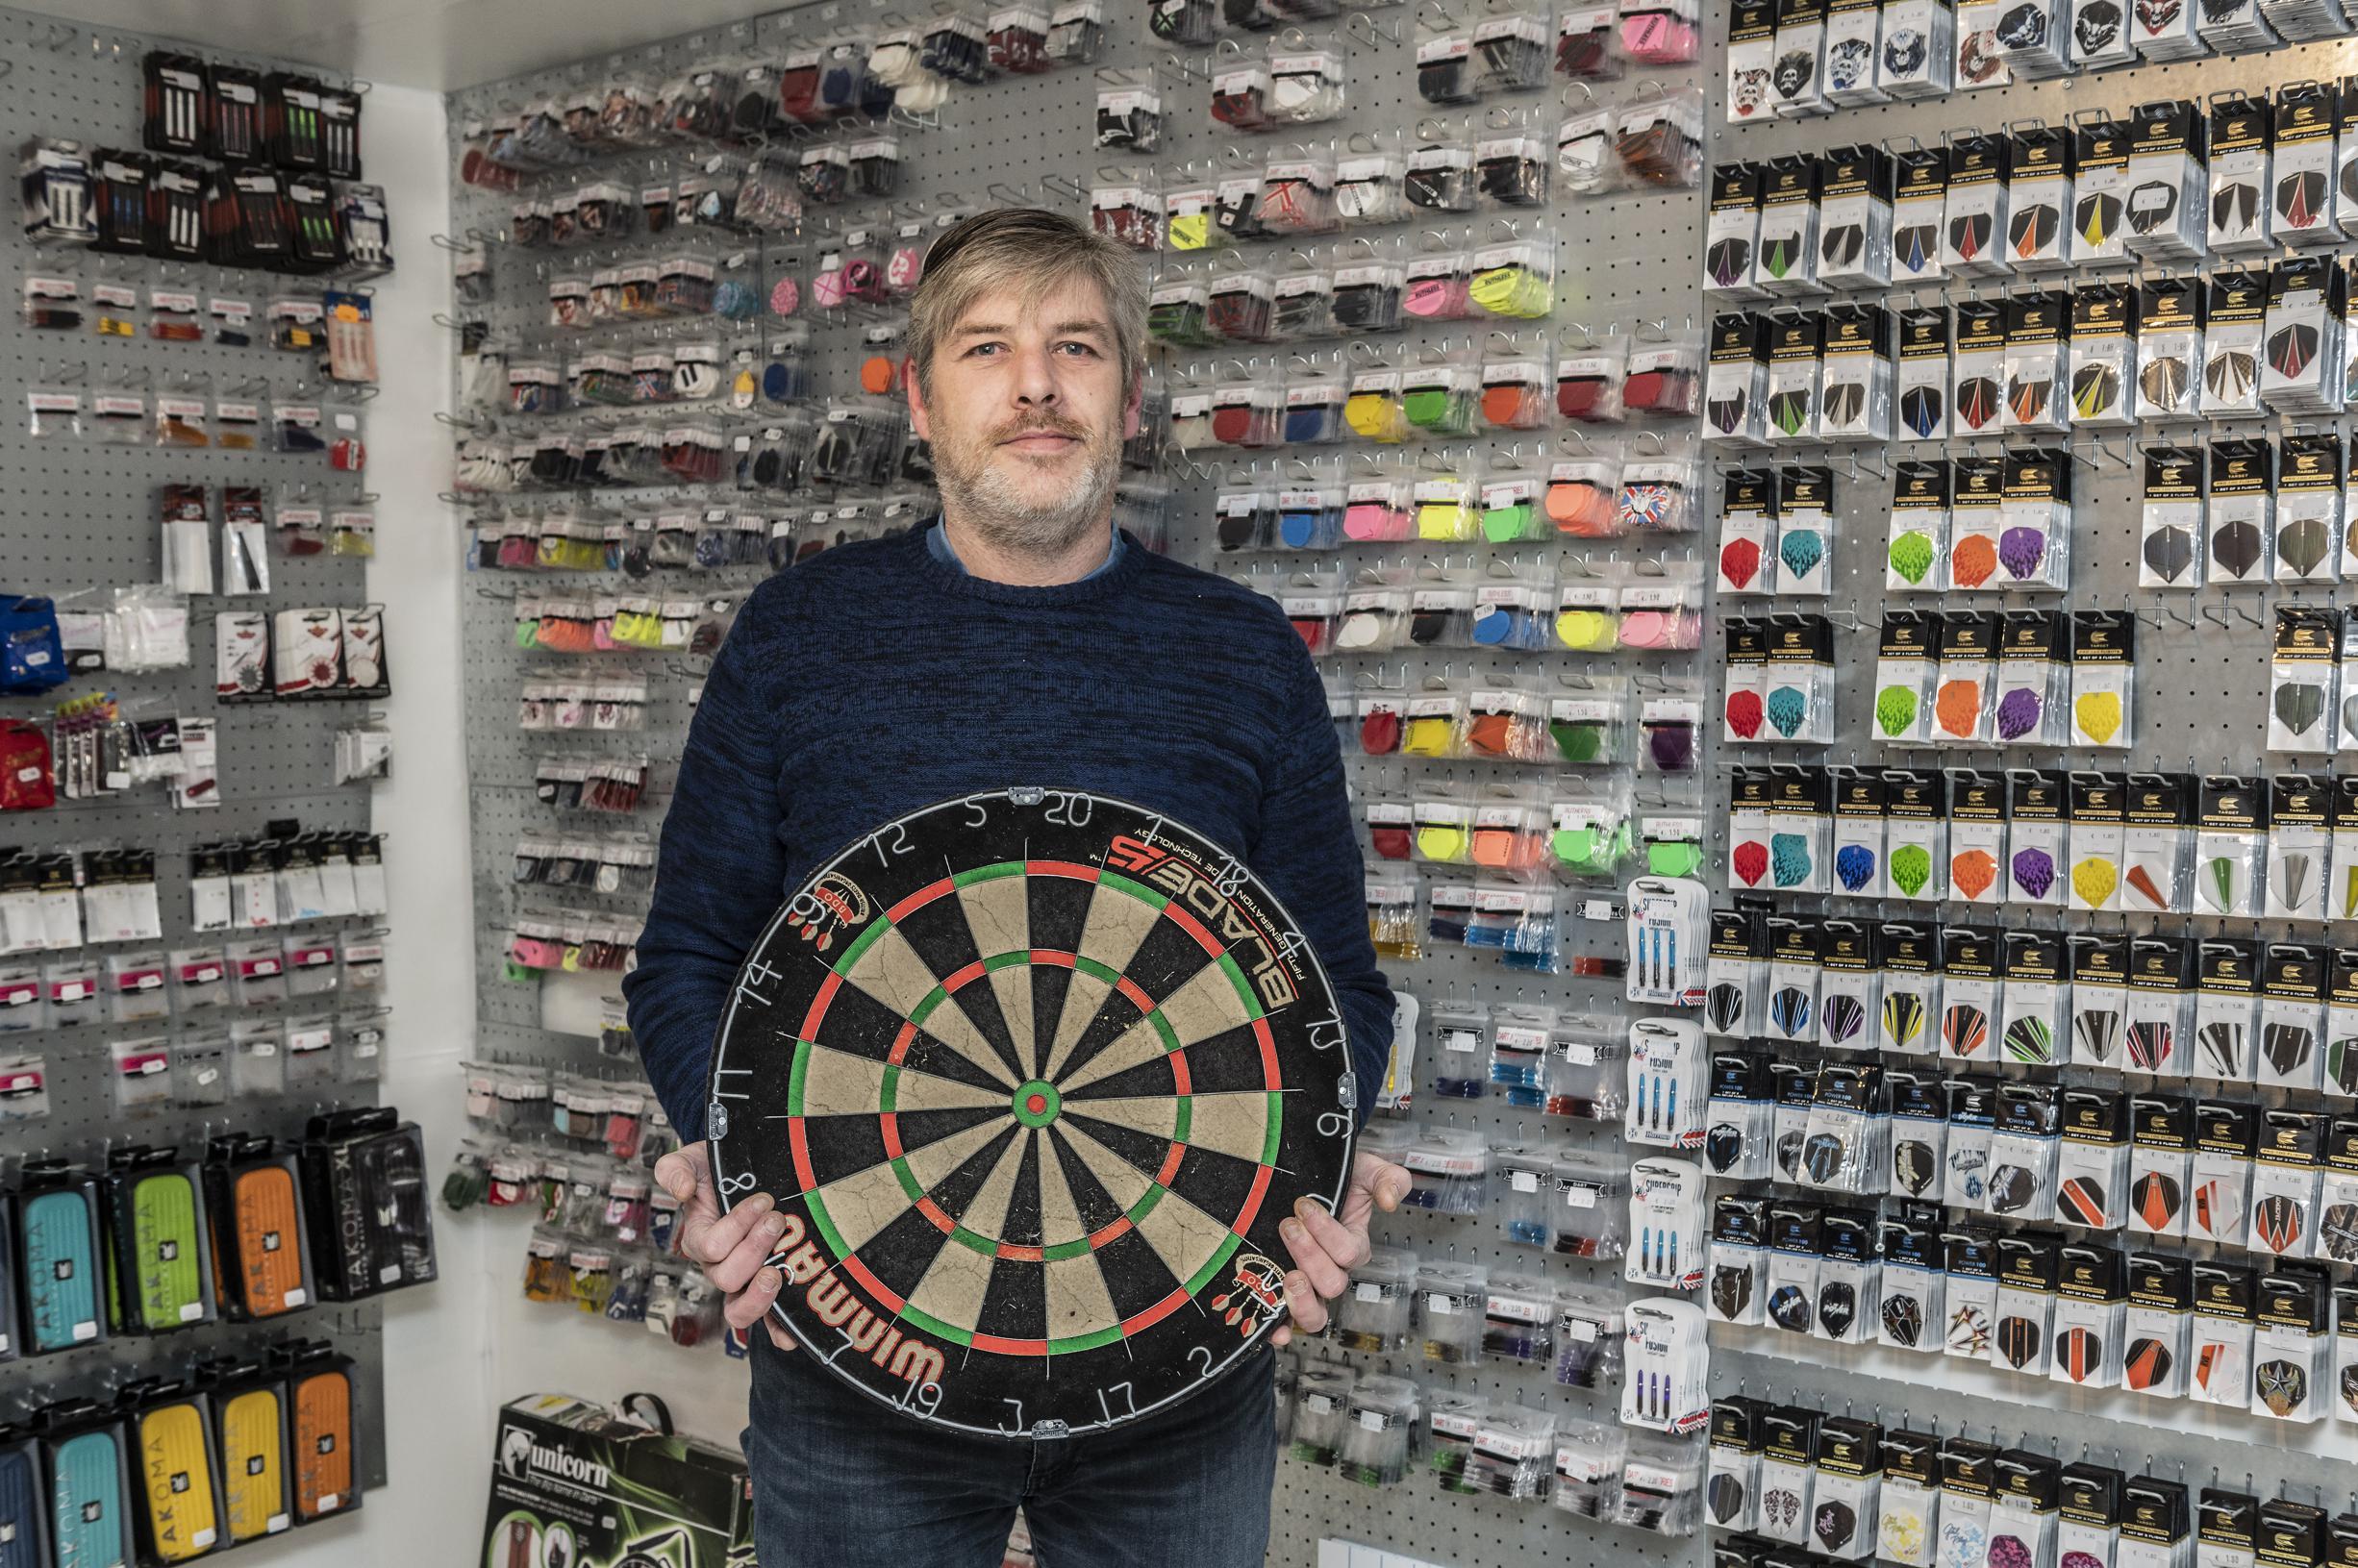 Storing Achternaam Rommelig Ook in Zuid-West-Vlaanderen wil iedereen plots darts spelen... maar net nu  sloot dartswinkel in Waregem de deuren | Het Nieuwsblad Mobile